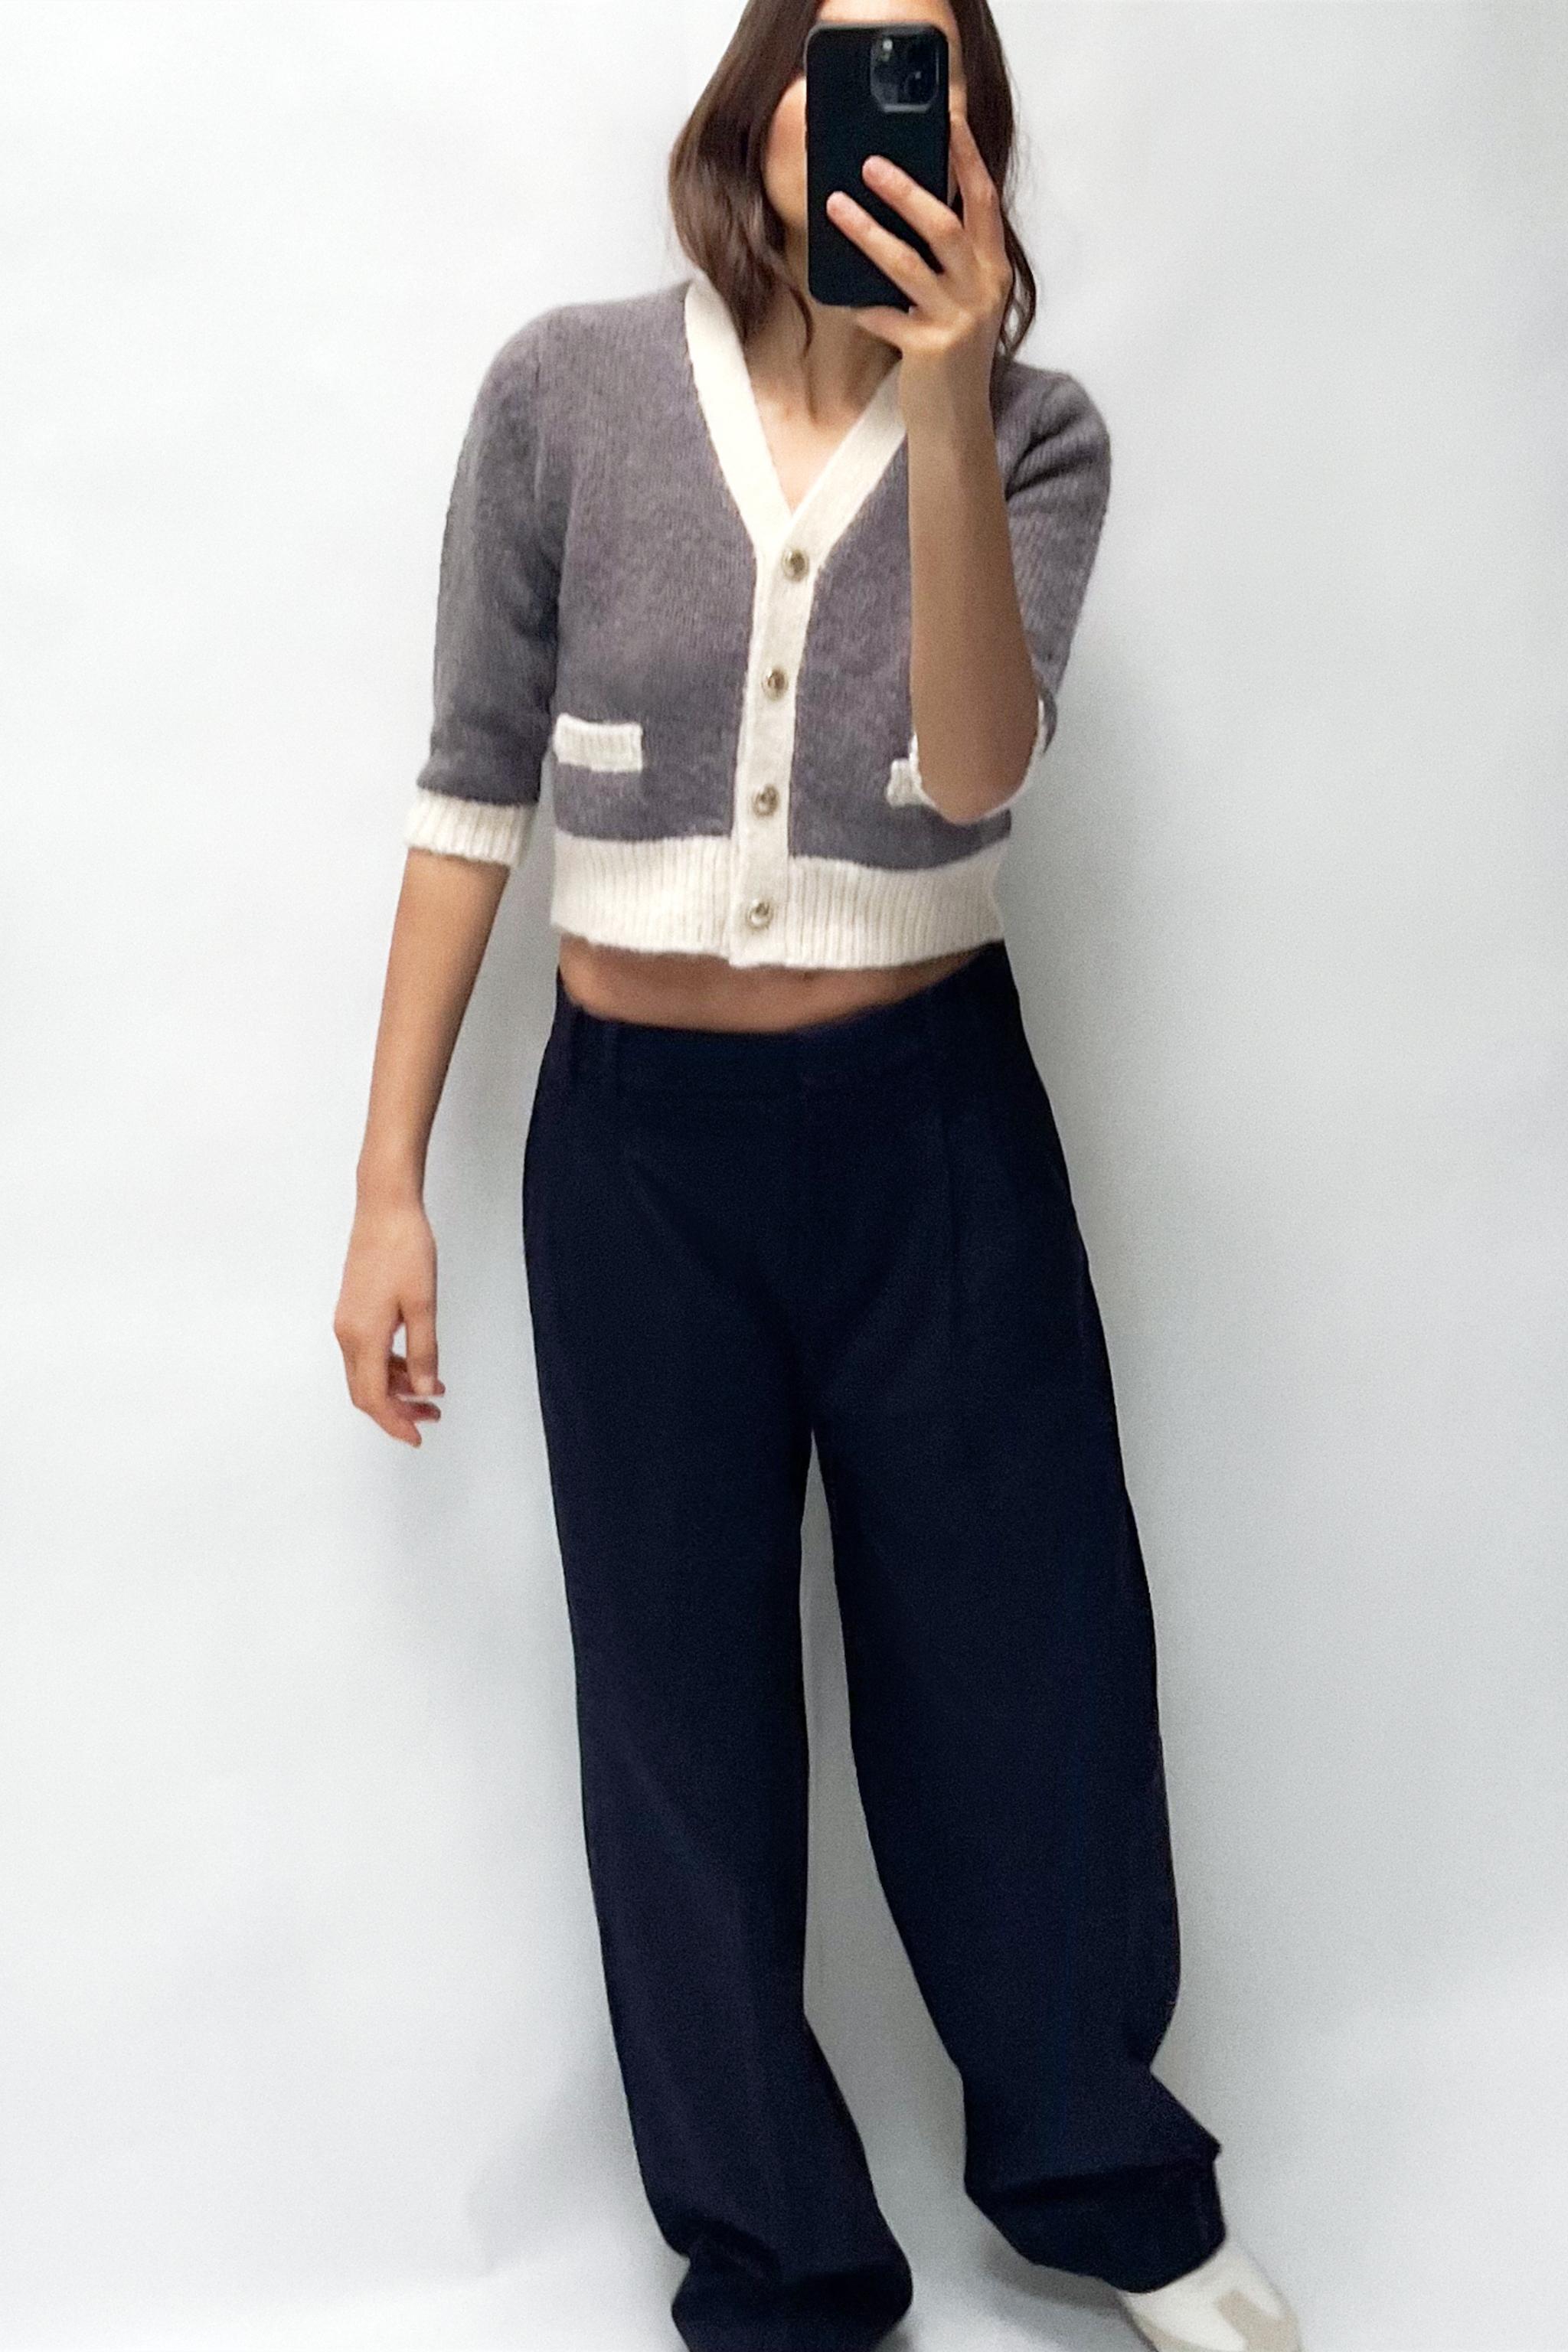 Combinando los pantalones bordados de Zara. Ref. 2731/046 💘 #zarawoma